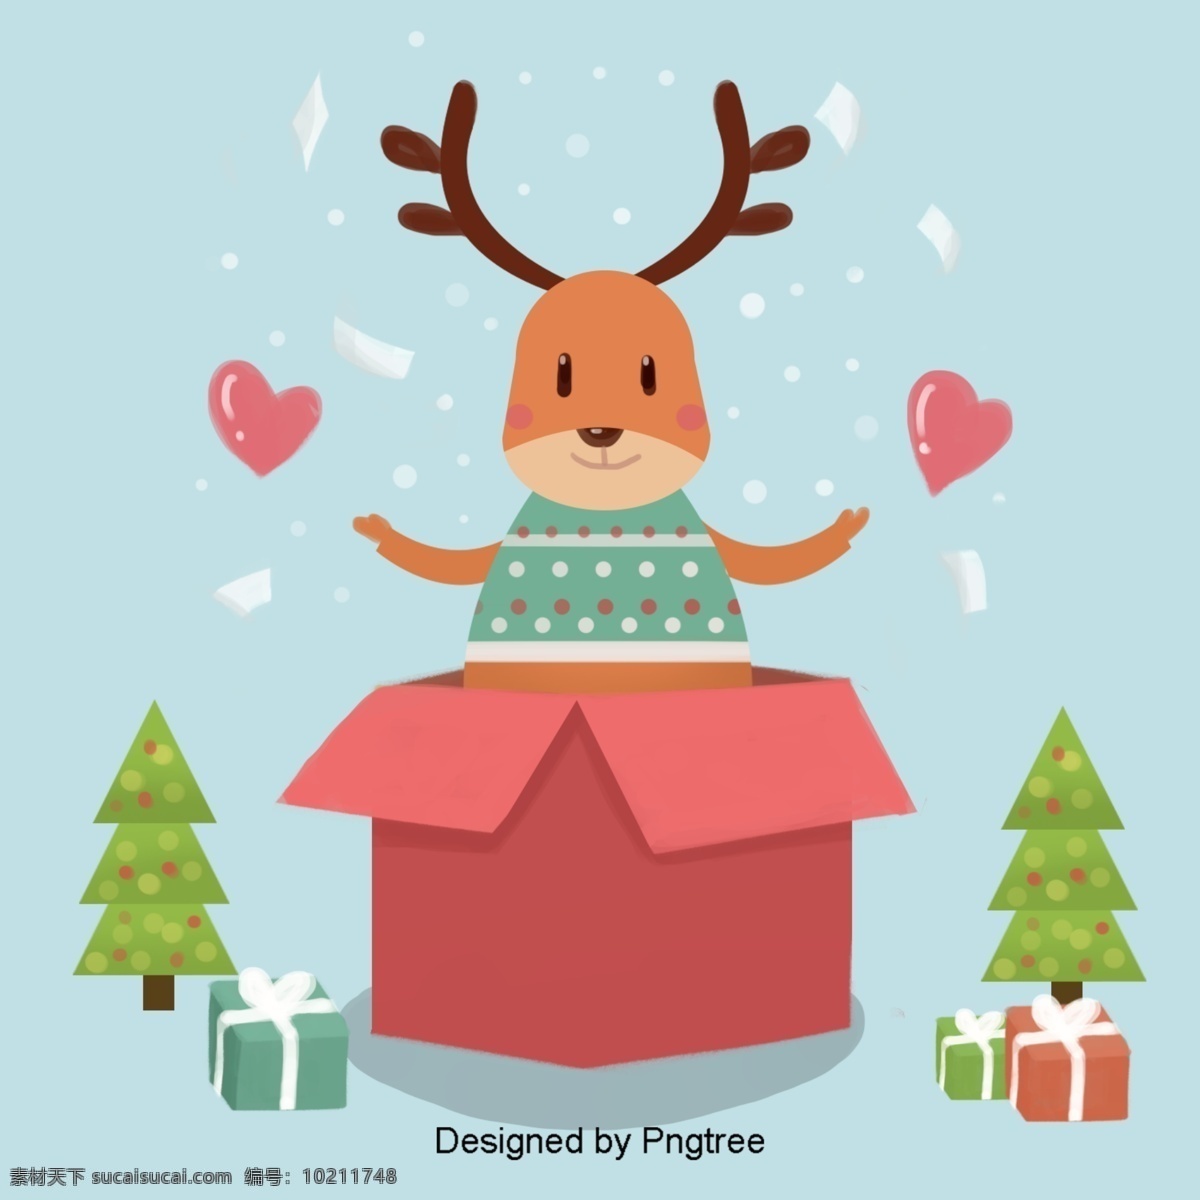 四集和圣诞节 麋鹿 快乐 节日 节日庆典 彩色 纸 爱 礼品 礼物 圣诞树 平